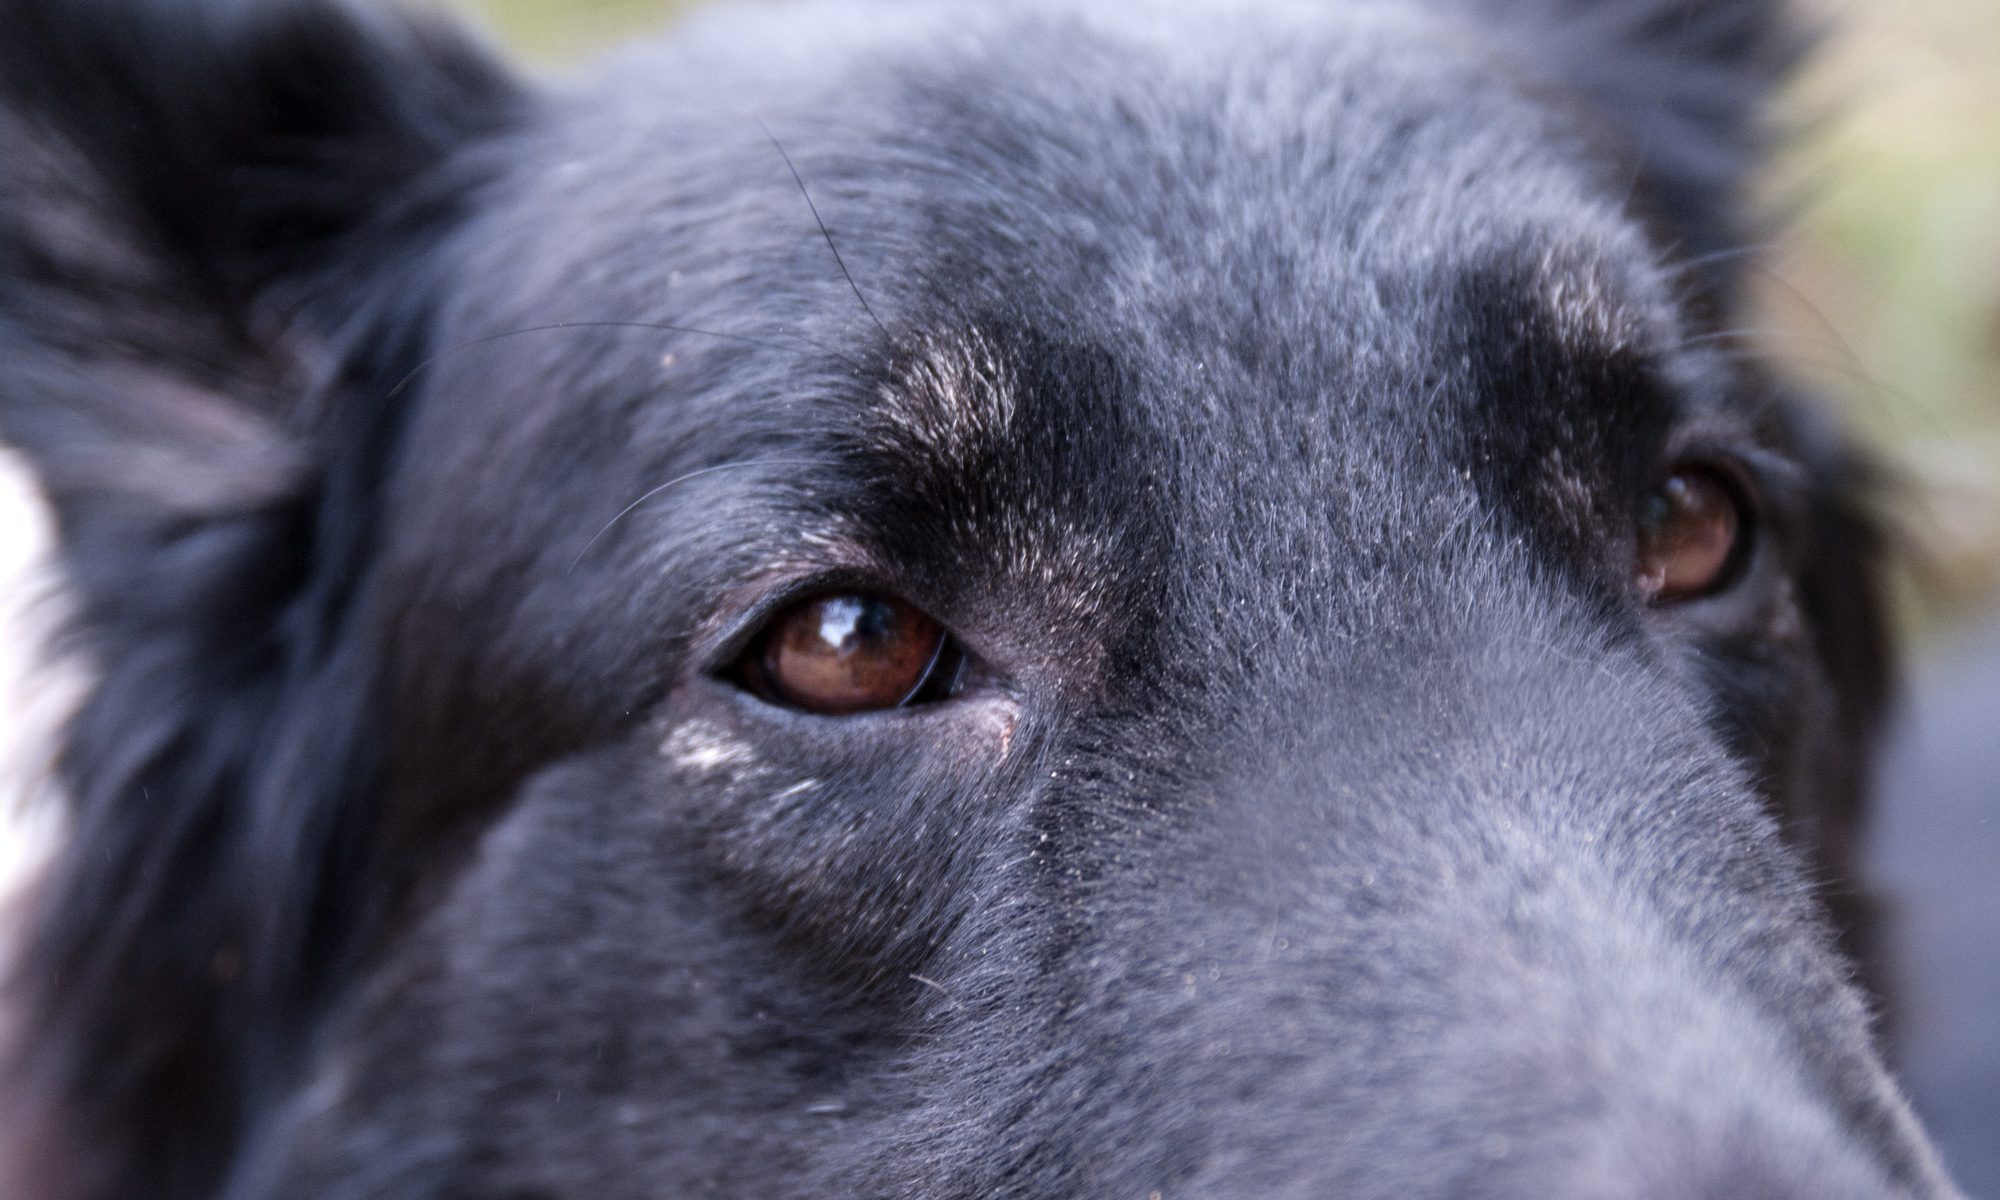 Closeup of a dog's face